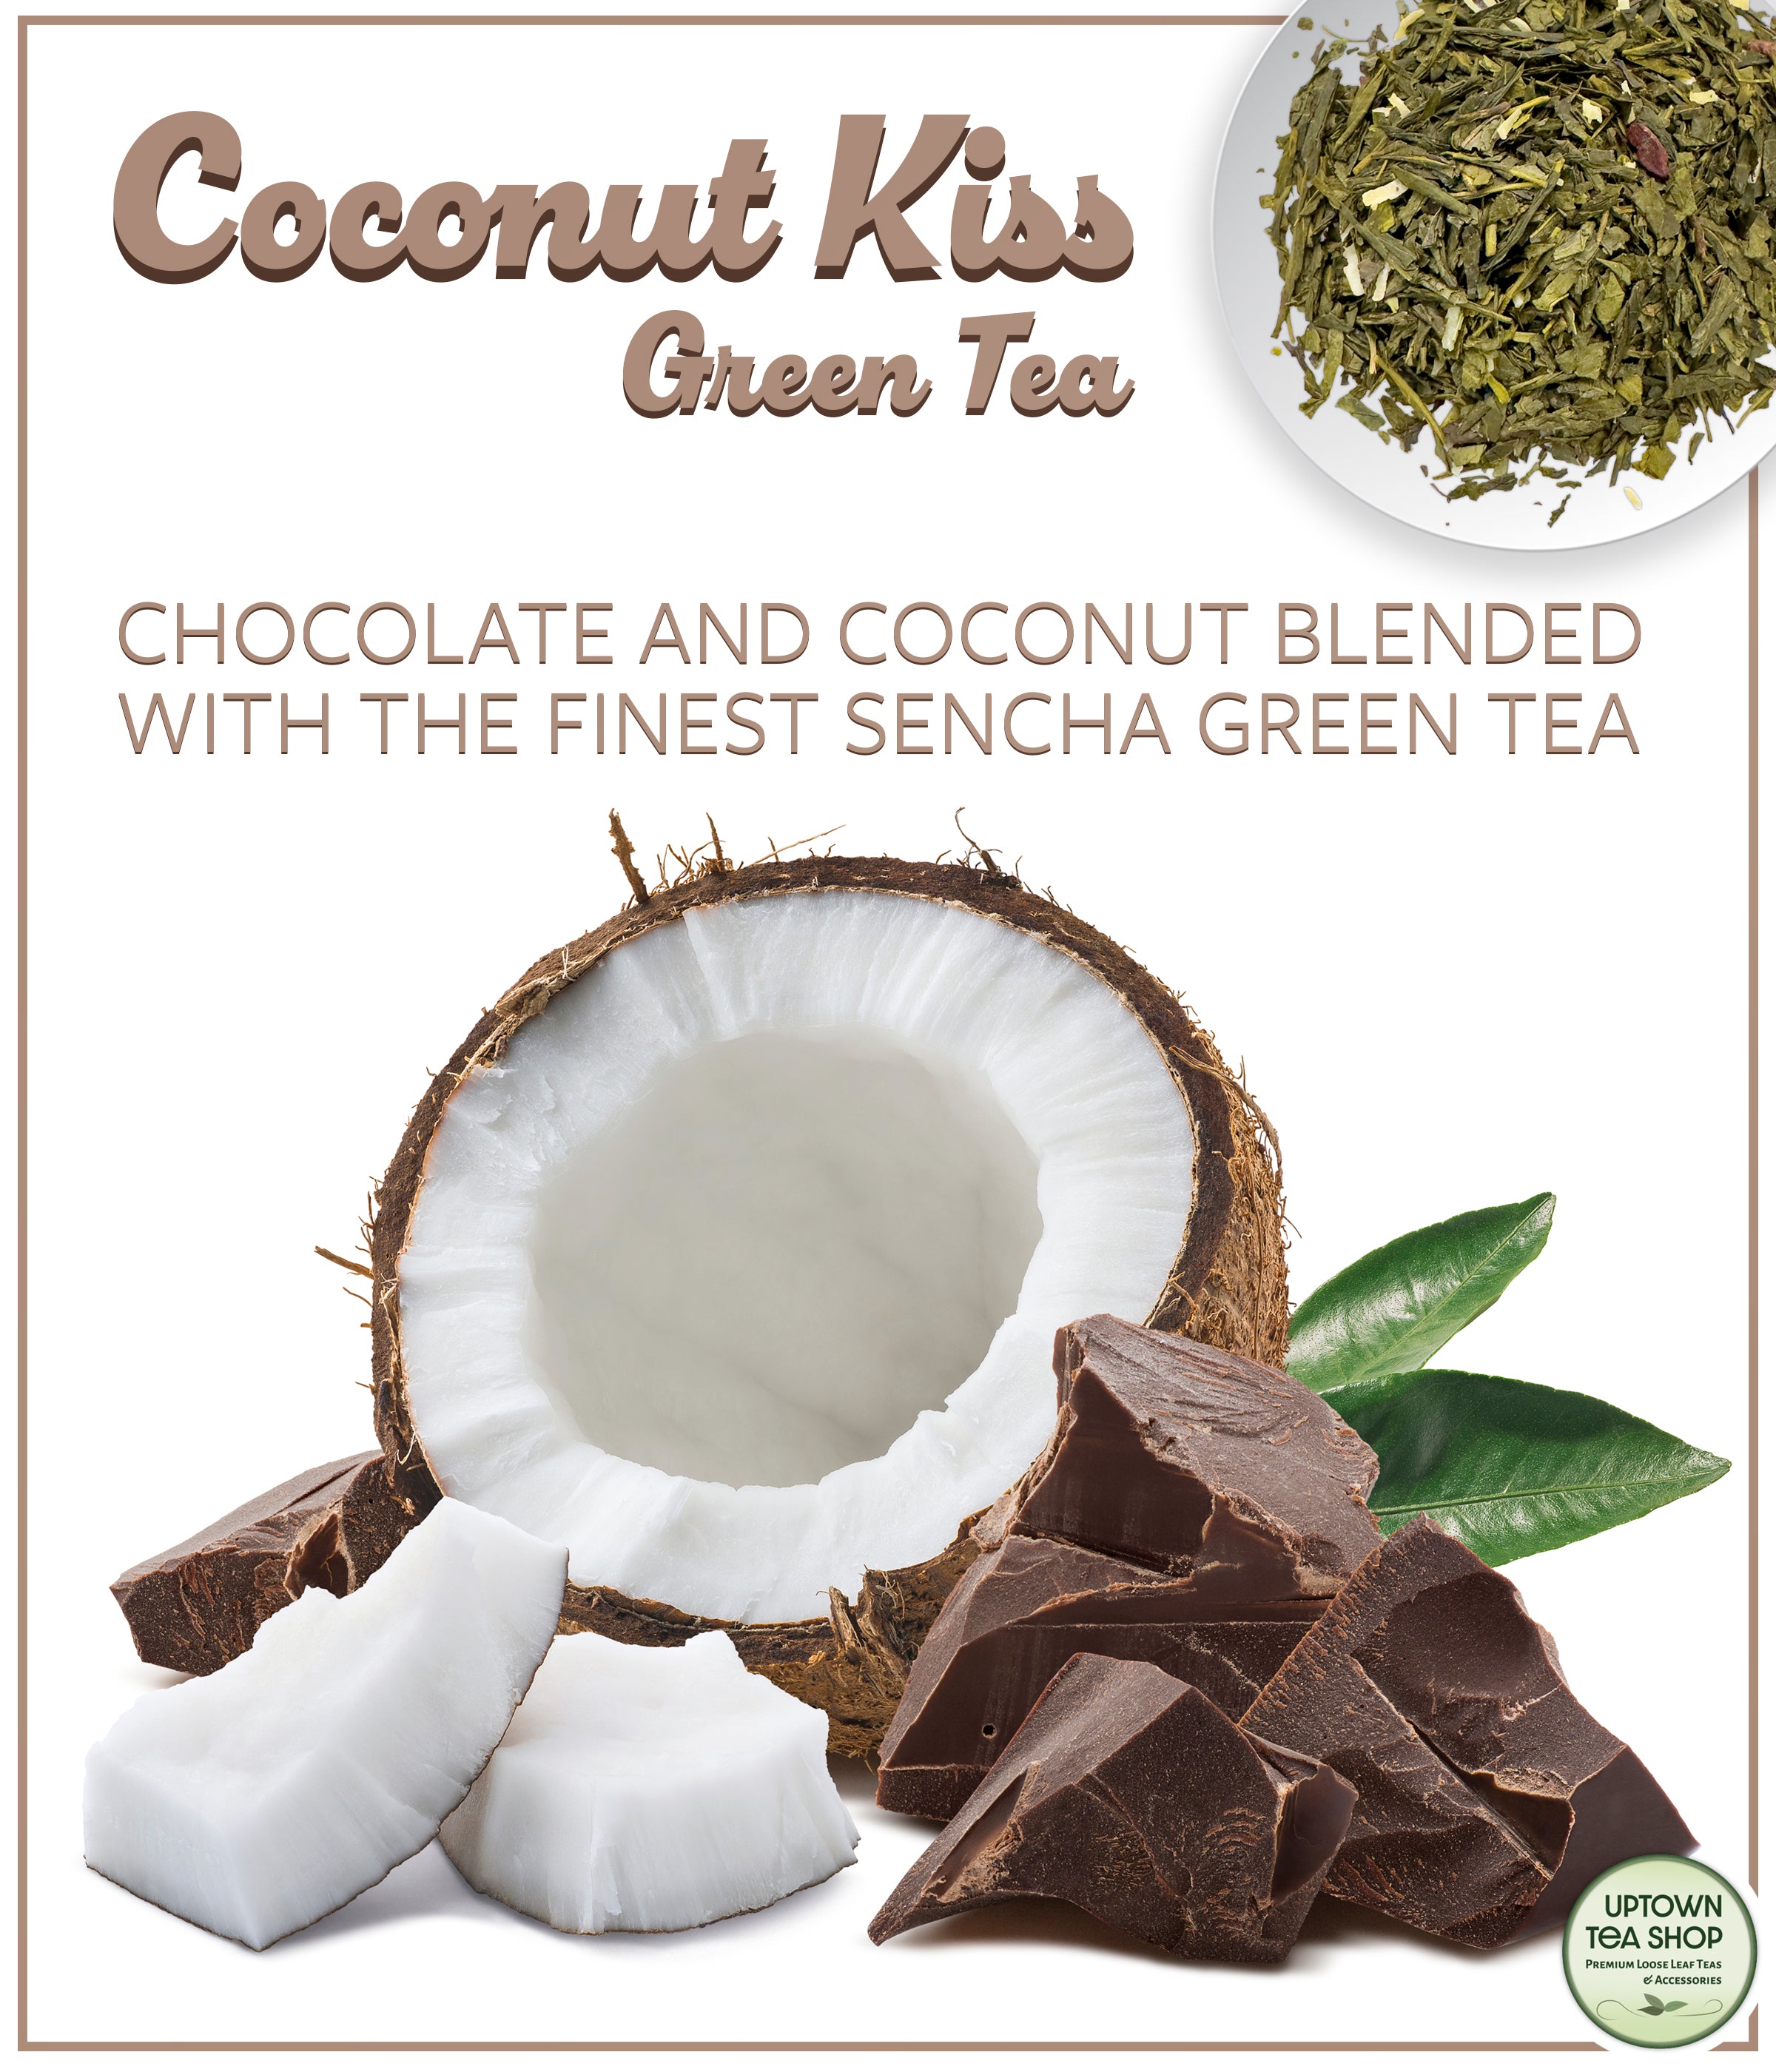 Coconut Kiss Green Tea